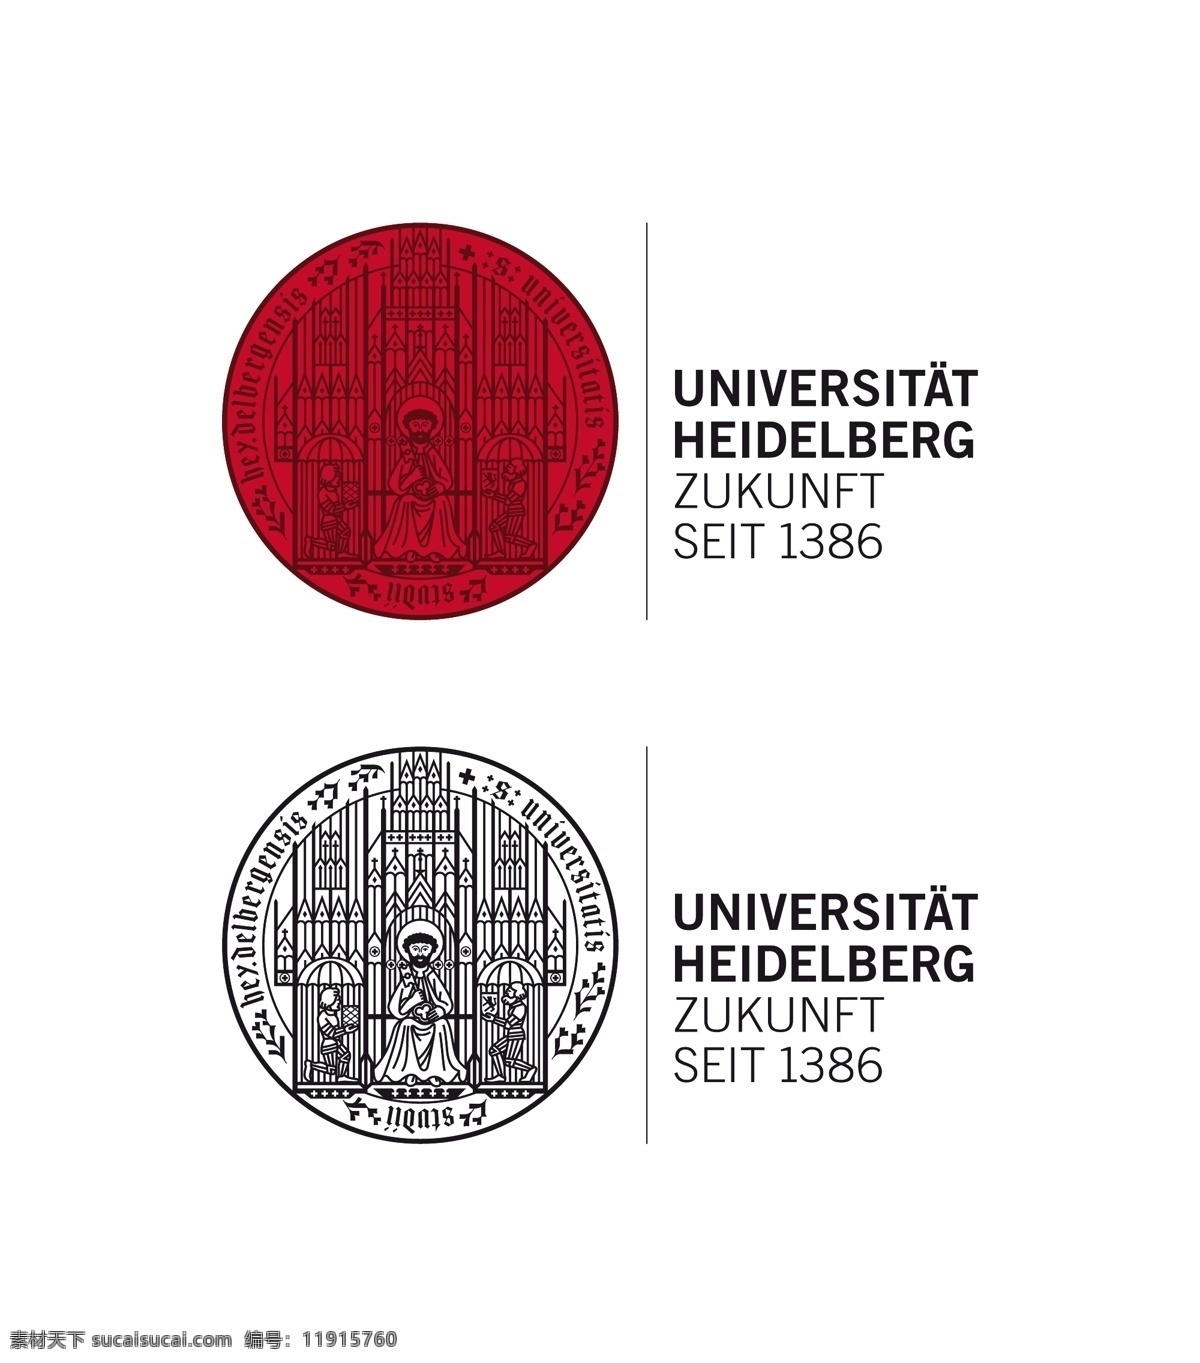 德国 海德堡大学 校徽 新版 ruprecht karls universitat heidelberg university 校标 徽标 标识 标志 logo 欧洲名校校徽 标志图标 其他图标